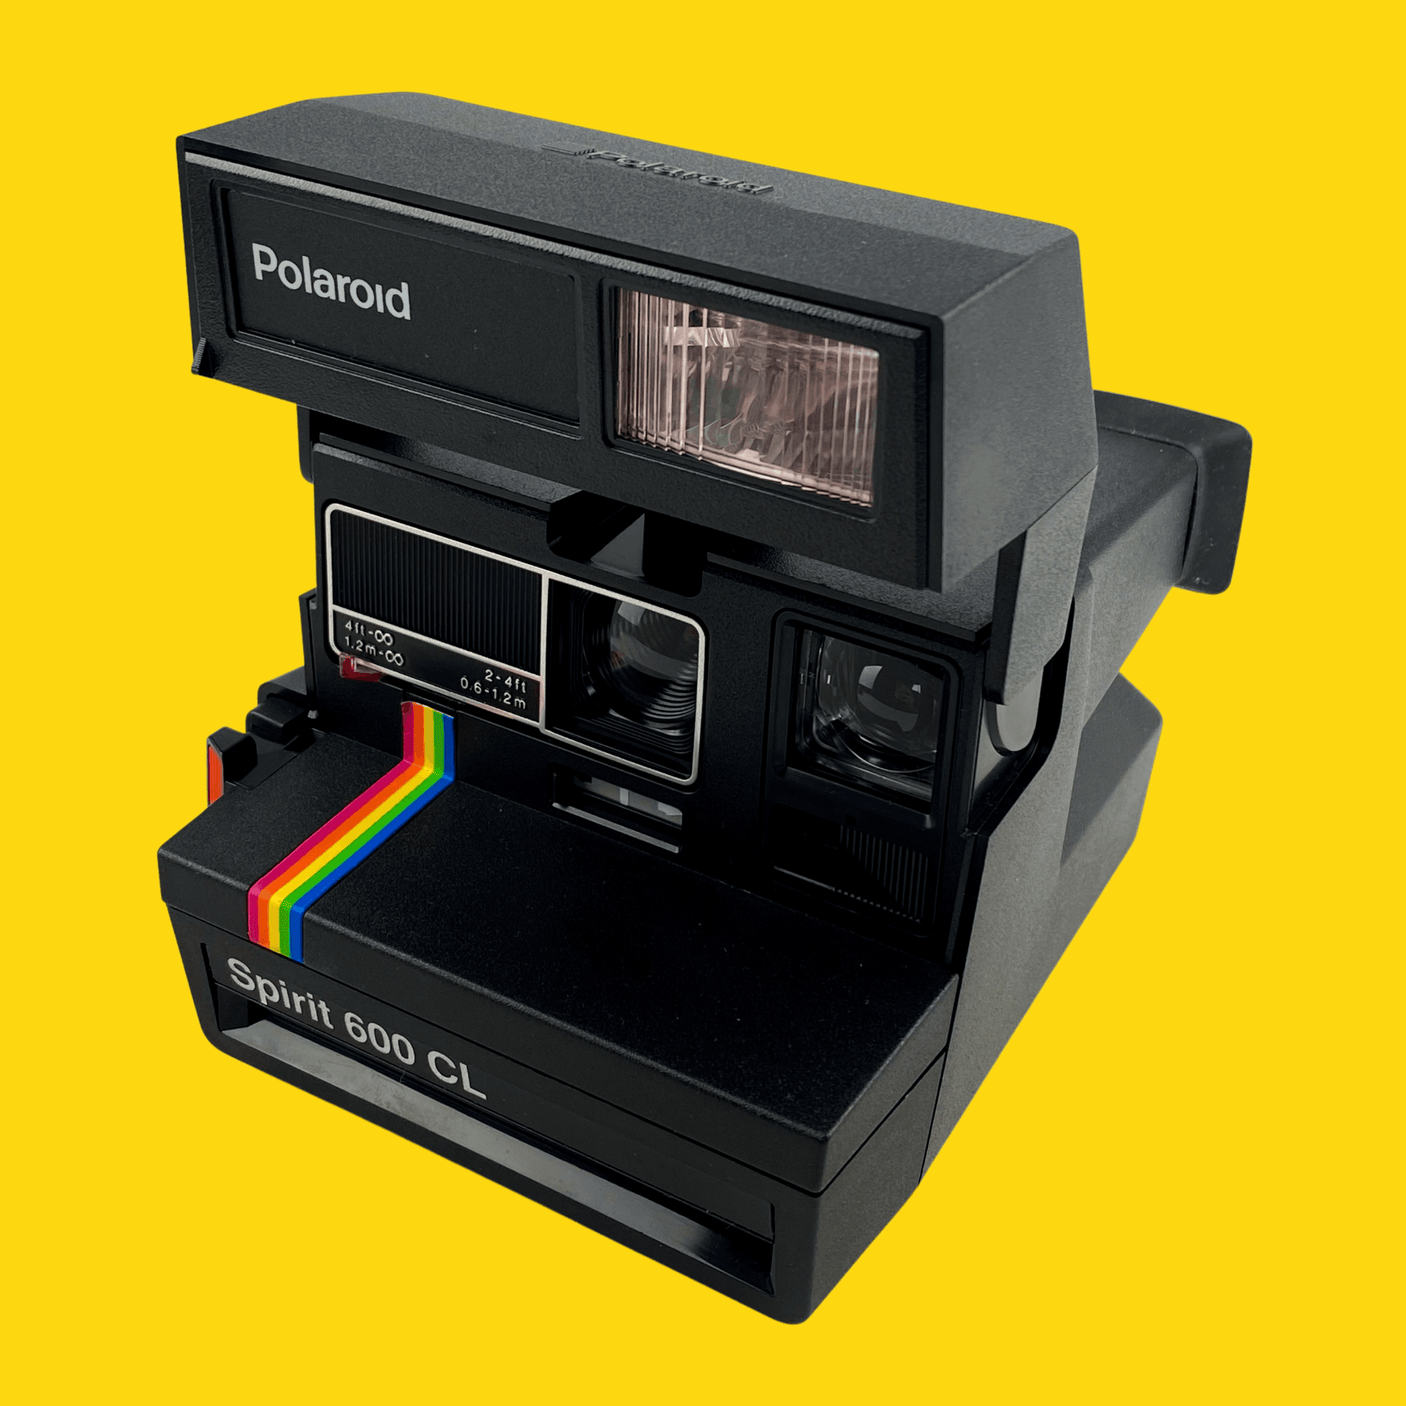 Polaroid Spirit 600CL Instant Film Camera (Boxed)